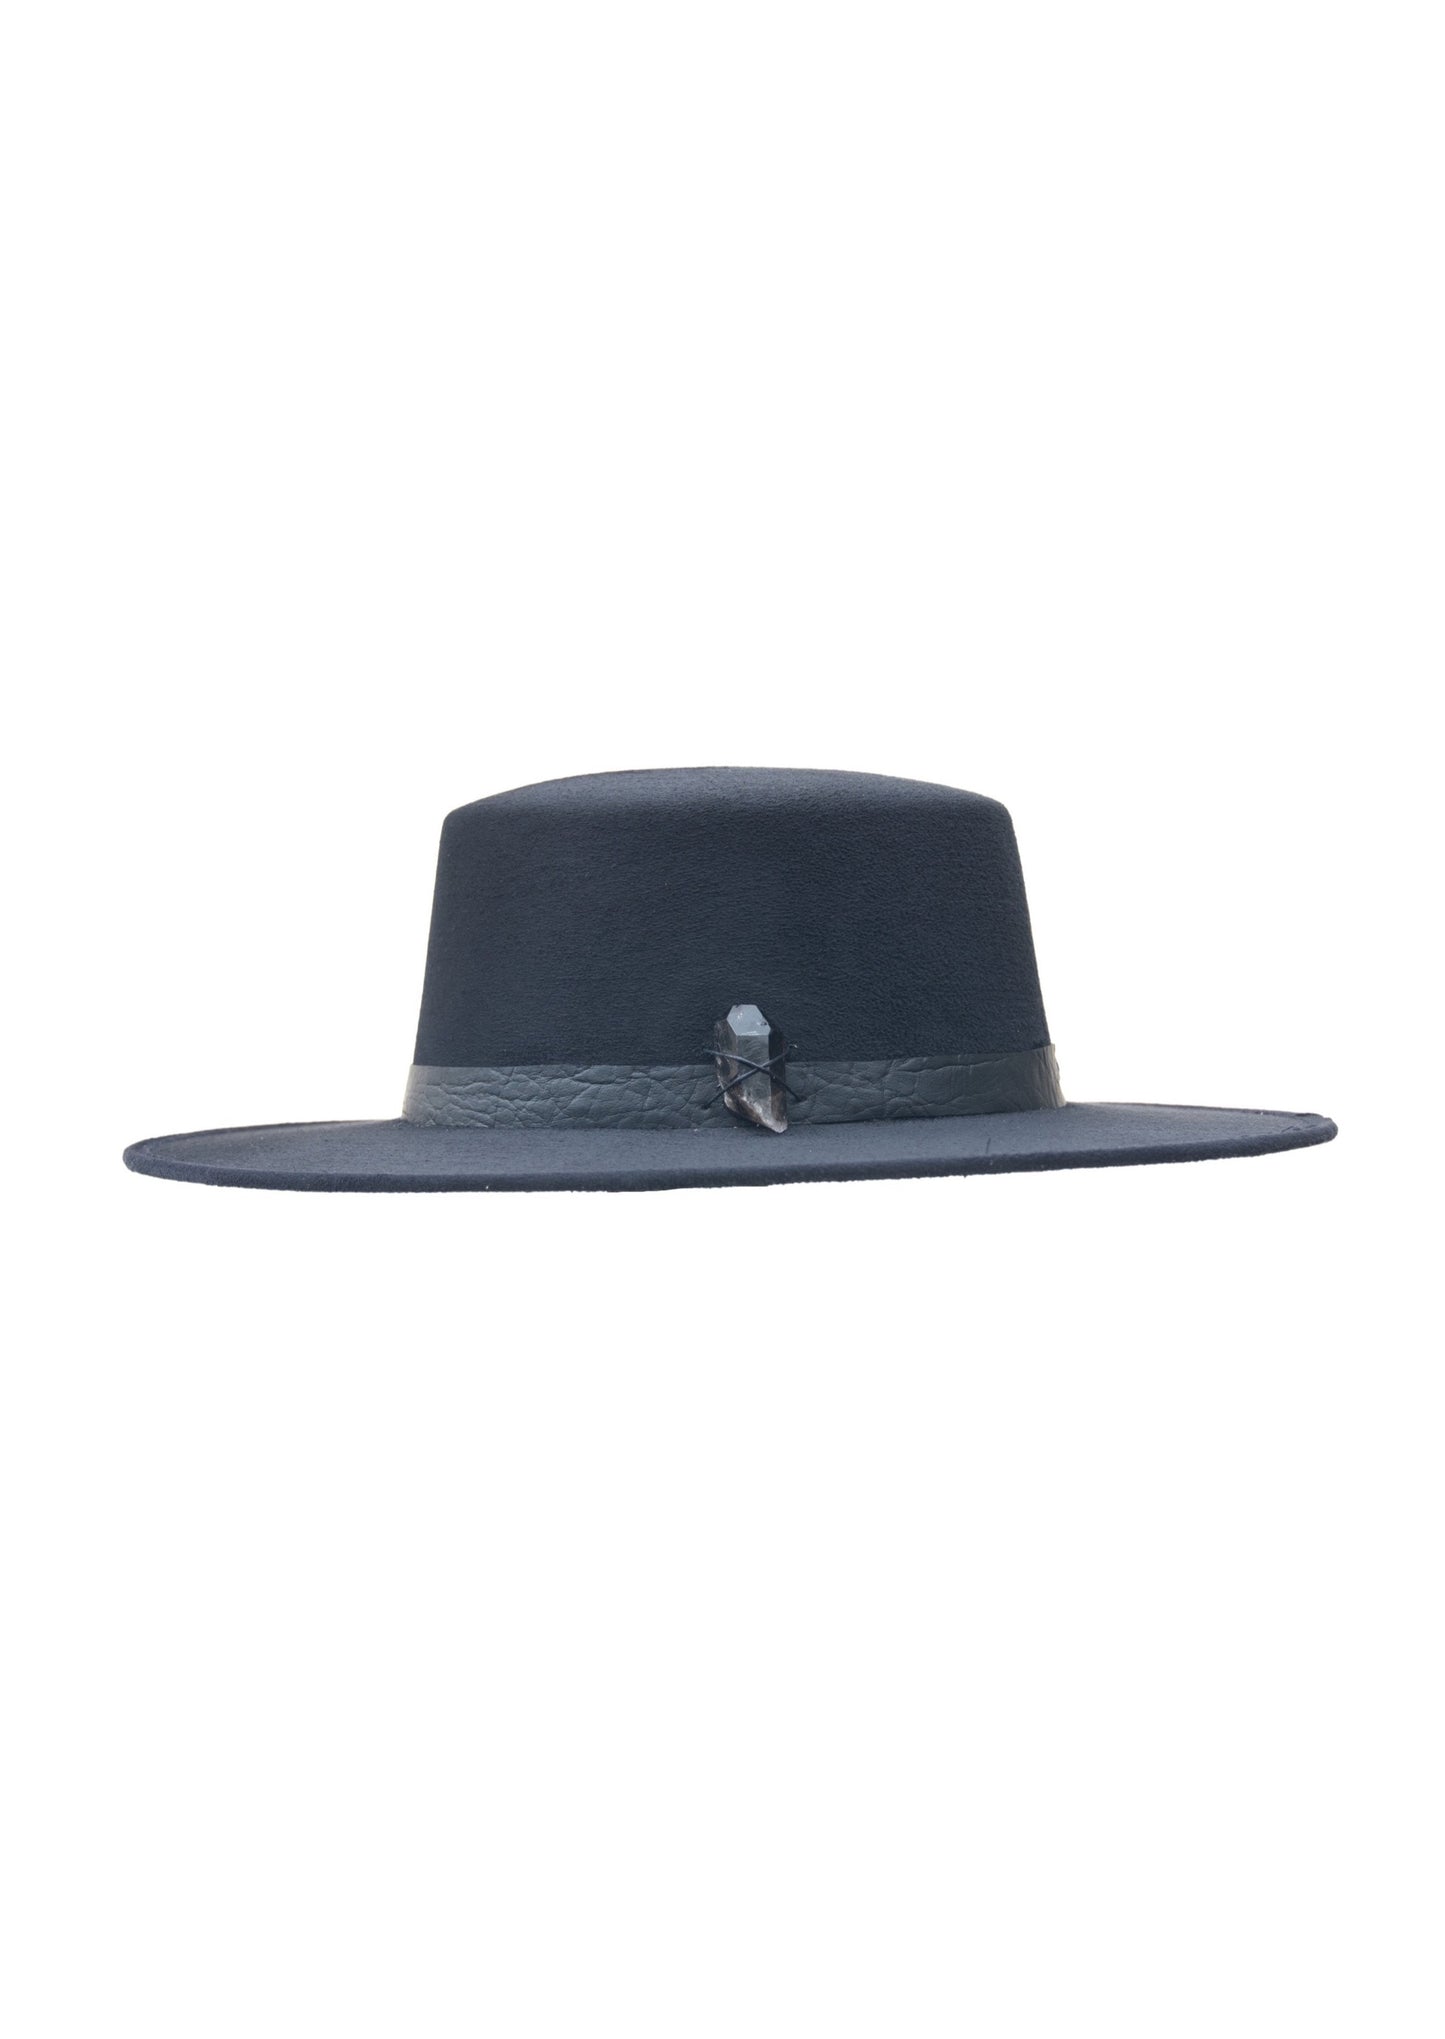 Sombrero gamuza negro